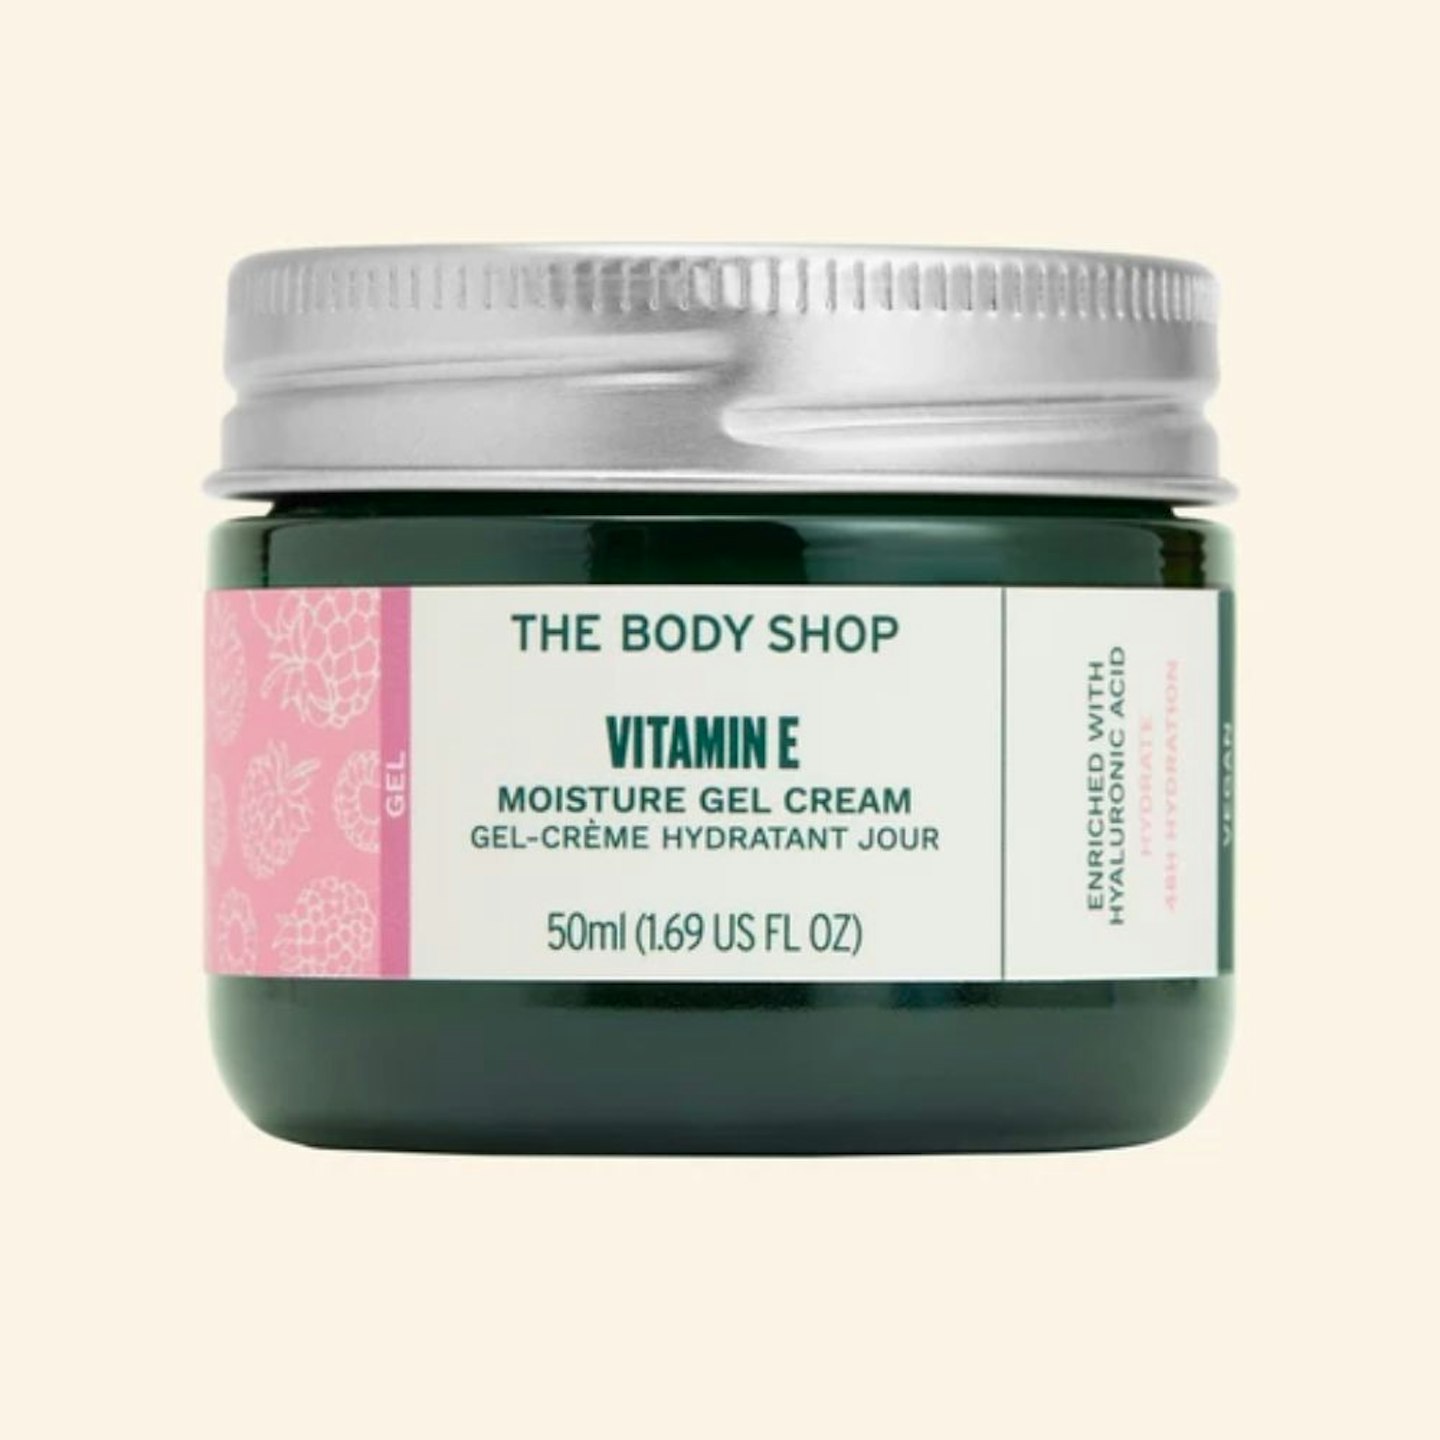 The Body Shop Vitamin E Moisture Gel Cream